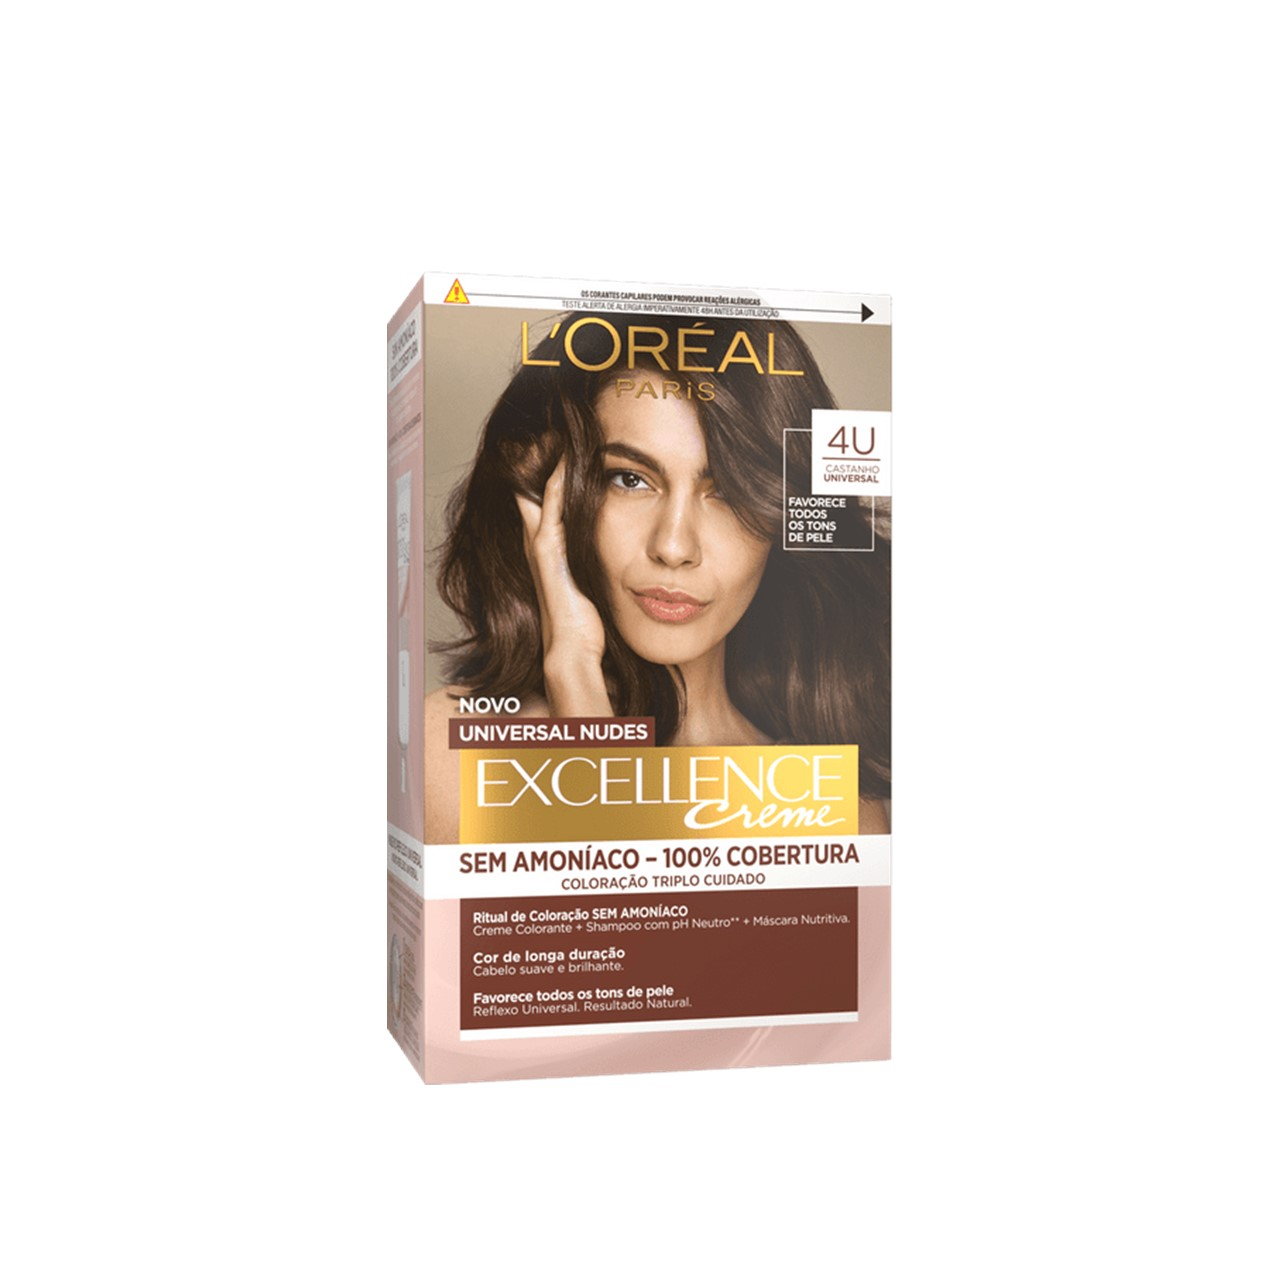 Buy L'Oréal Paris Excellence Universal Nudes Creme 4U Permanent